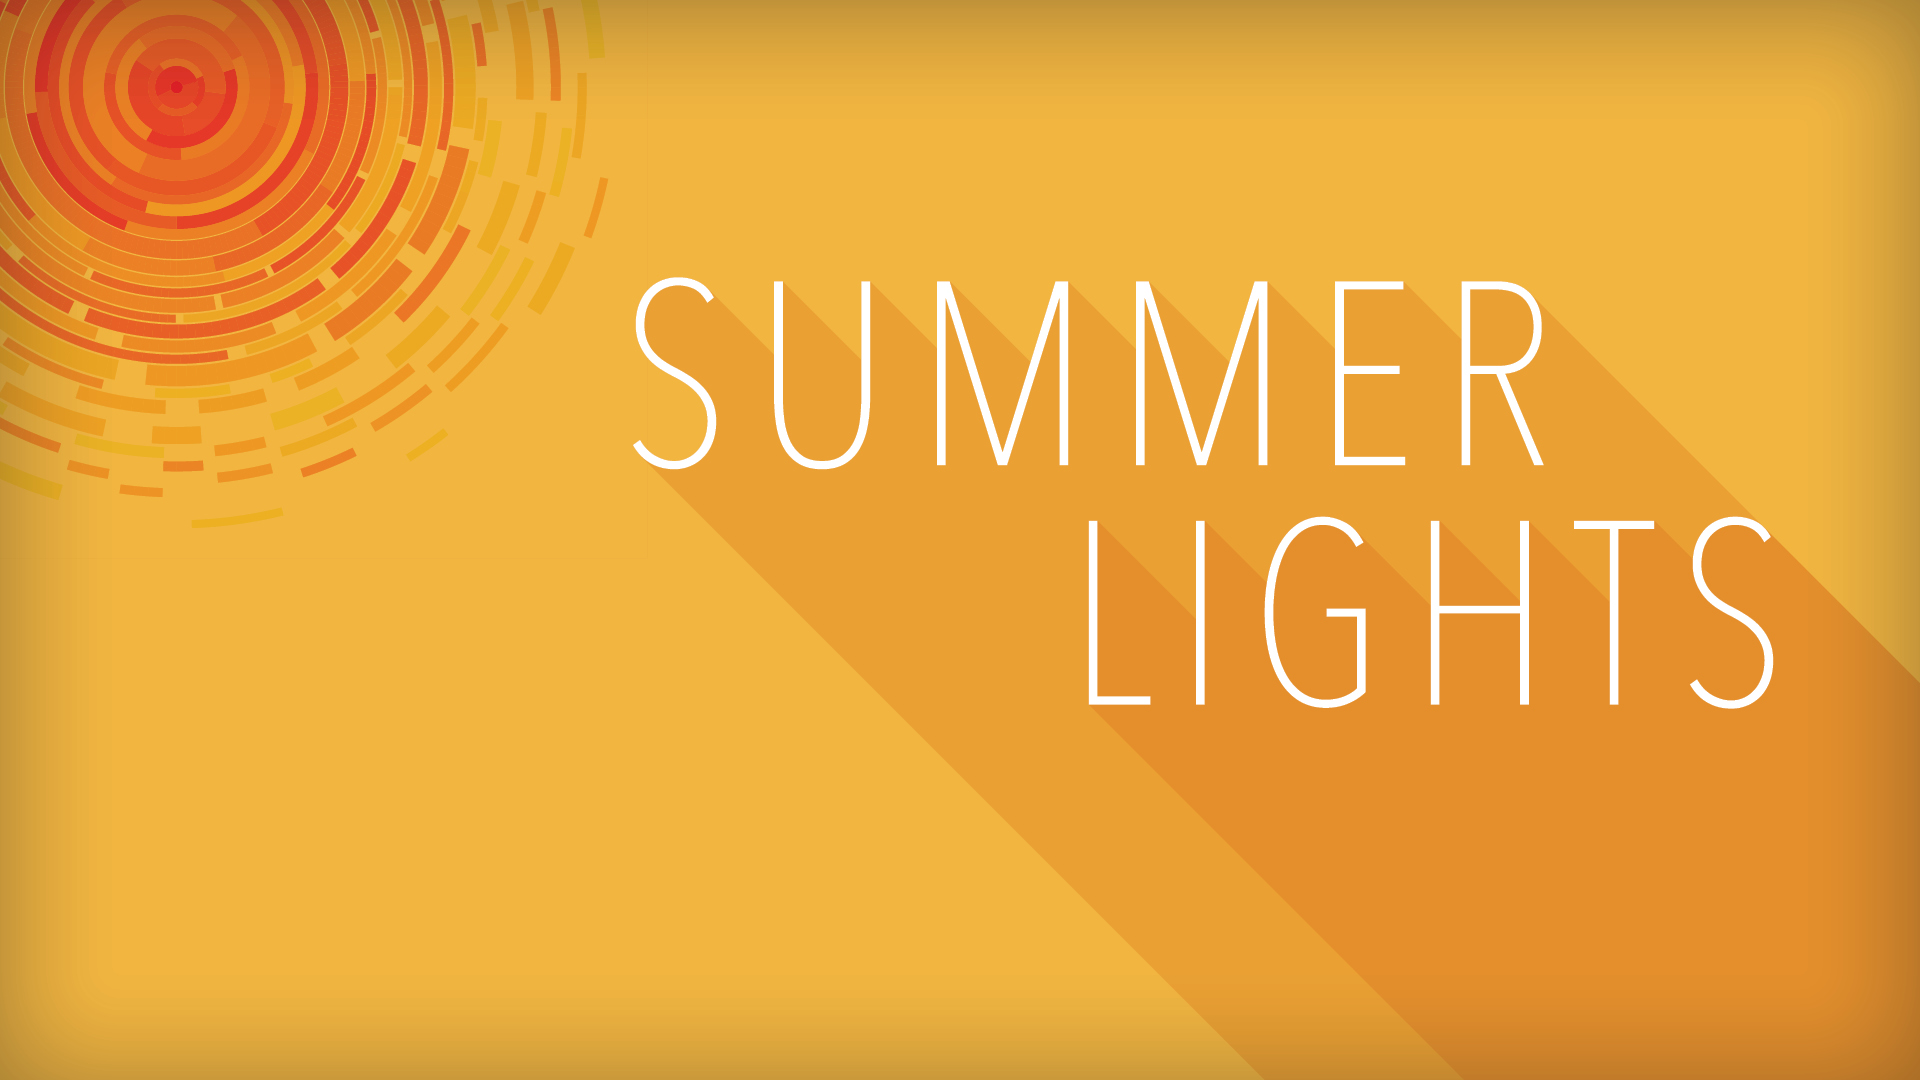 Summer Lights Sermon Series
July 31–August 28
9:00 a.m. & 11:00 a.m. | Oak Brook
10:00 a.m. | Butterfield

 
